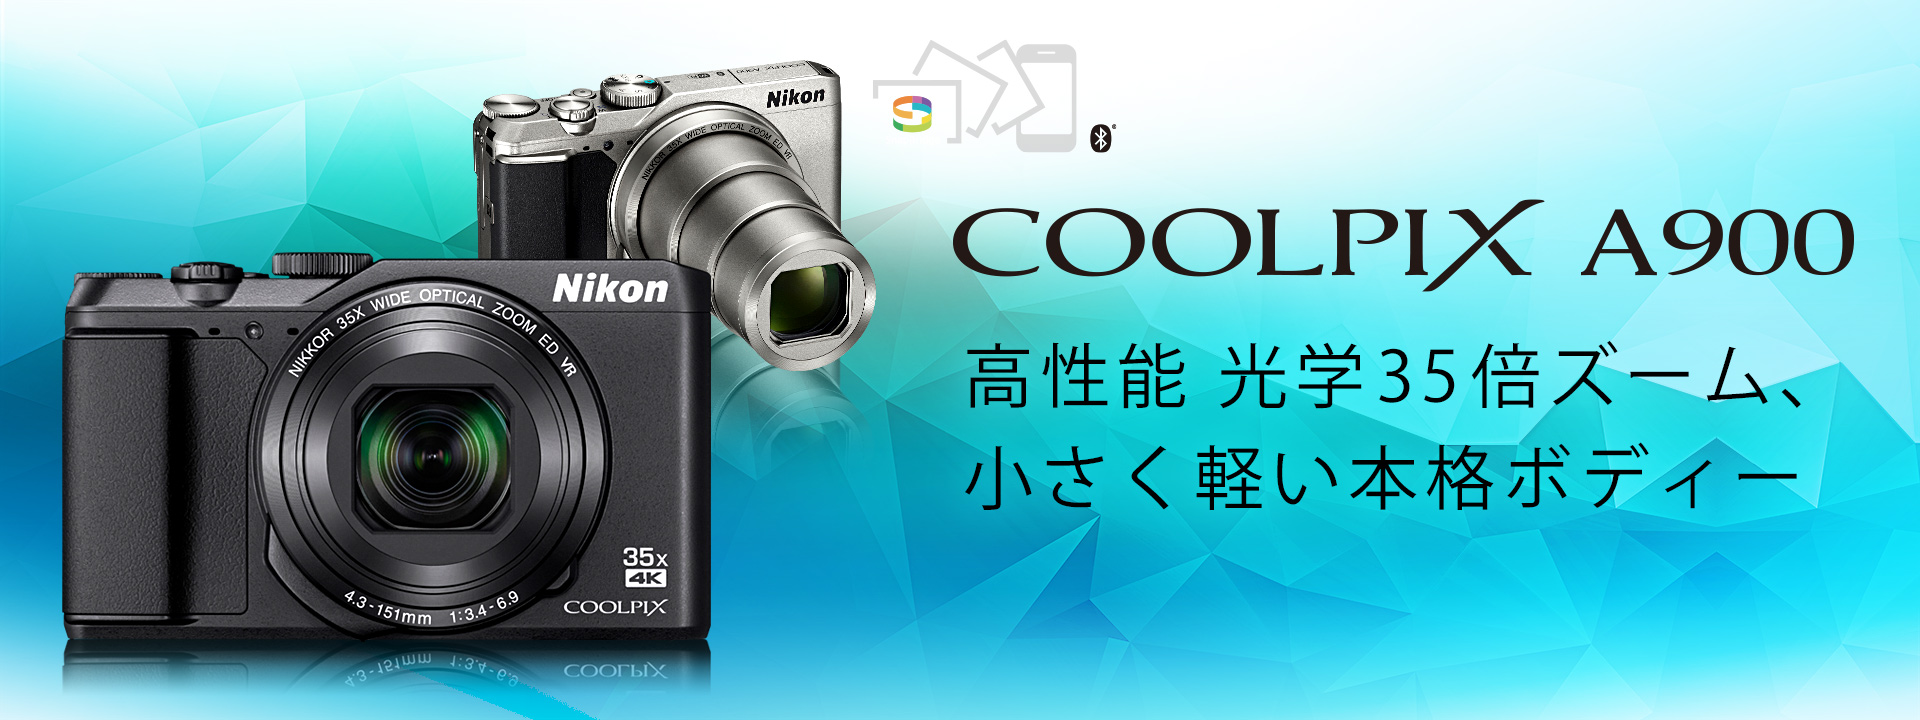 ■Nikon デジタルカメラ COOLPIXA900